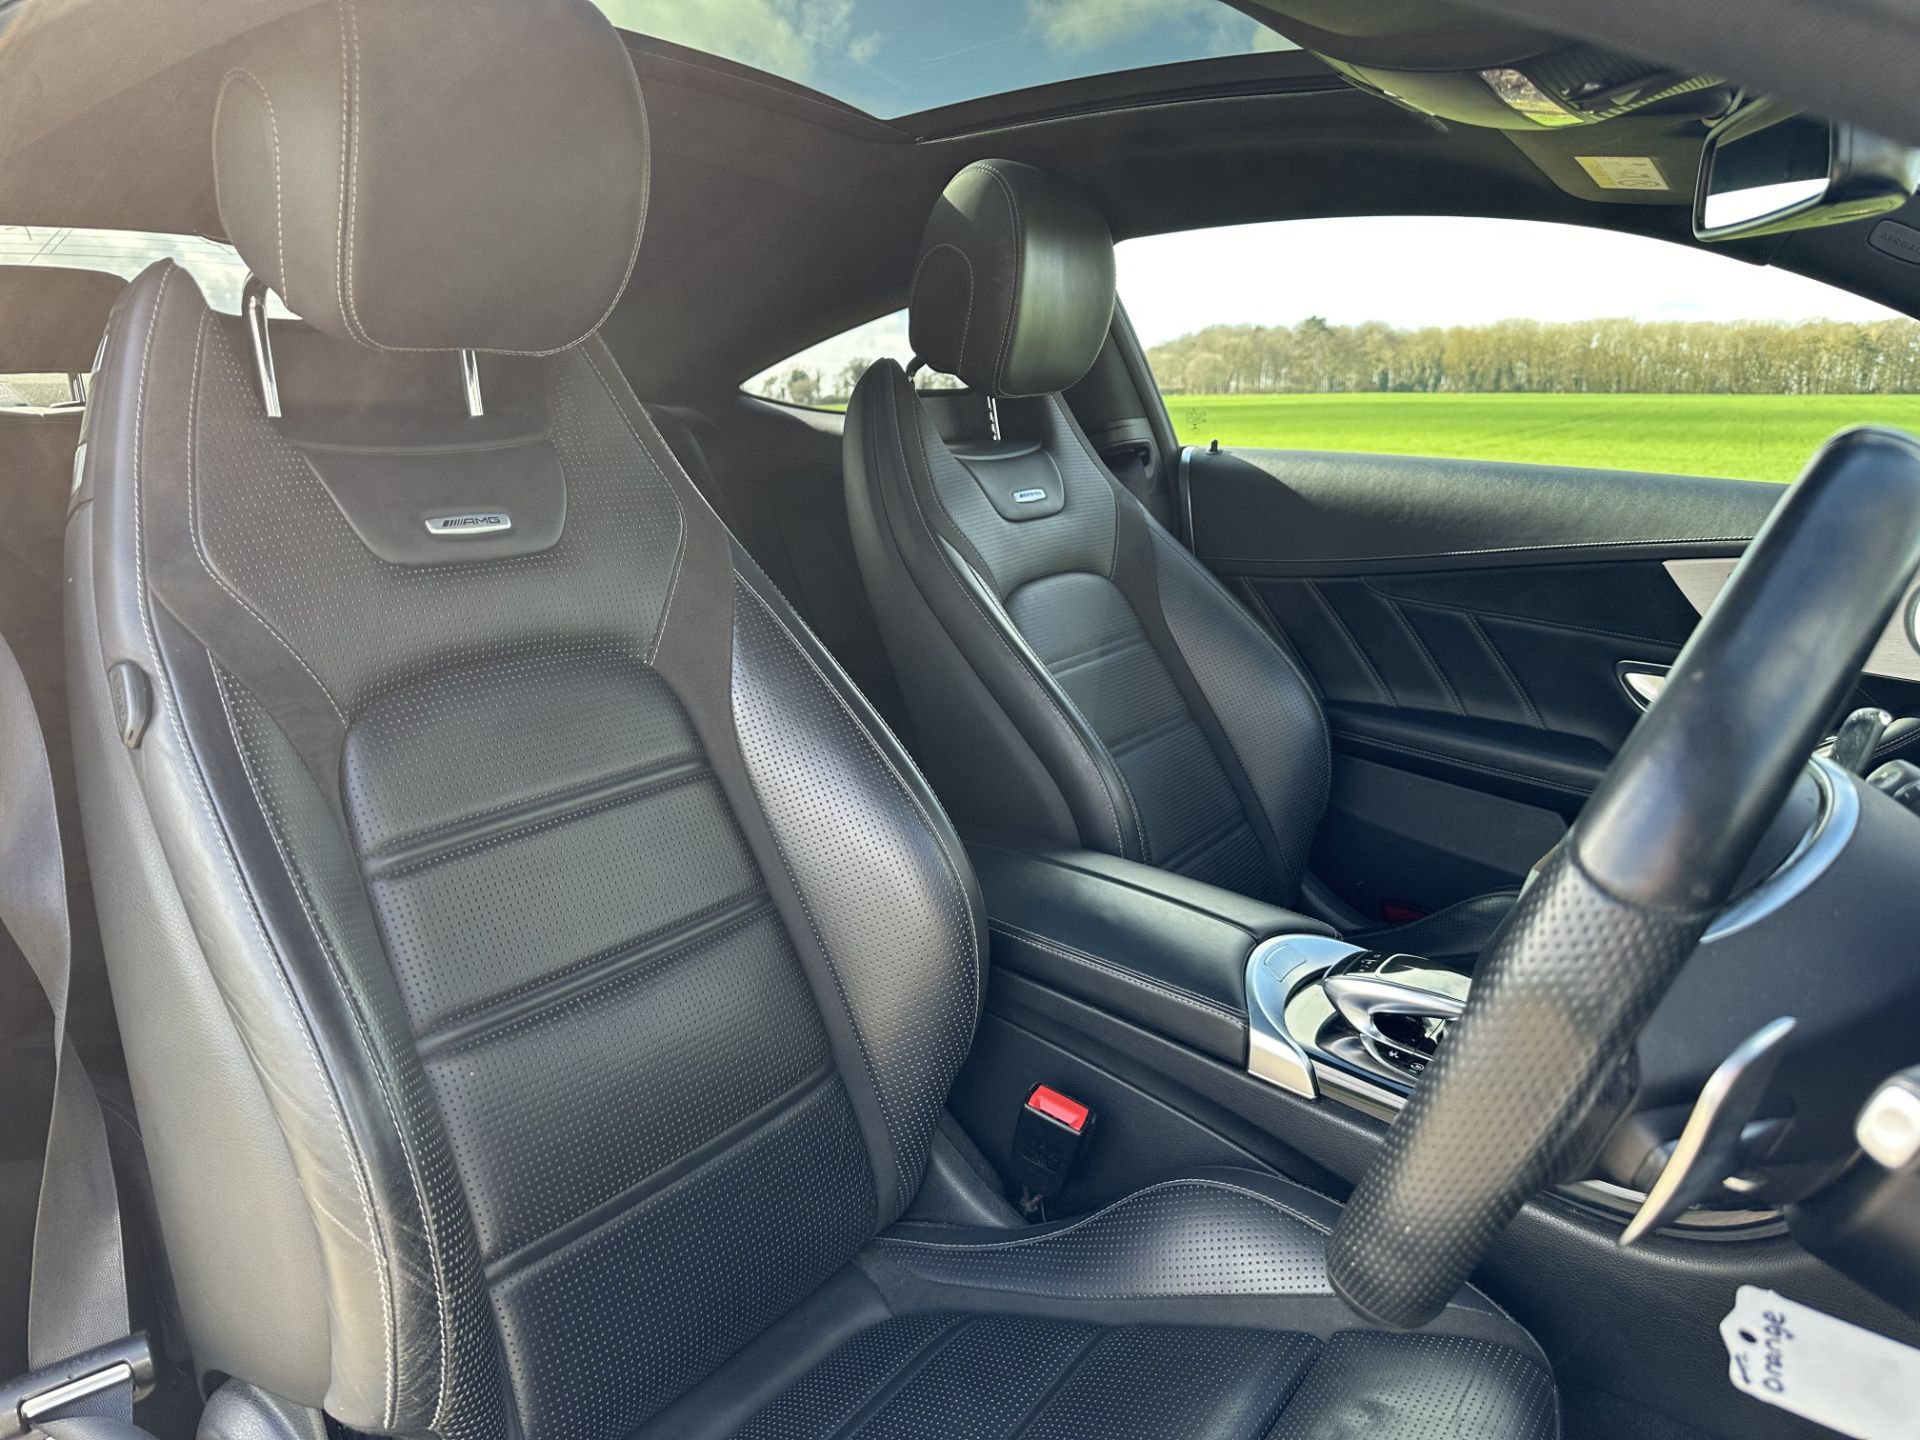 MERCEDES-BENZ C CLASS C63 Premium 2dr Auto - 2019 Model - Petrol - 59K miles - Coupe - SH PRINT - Image 23 of 34